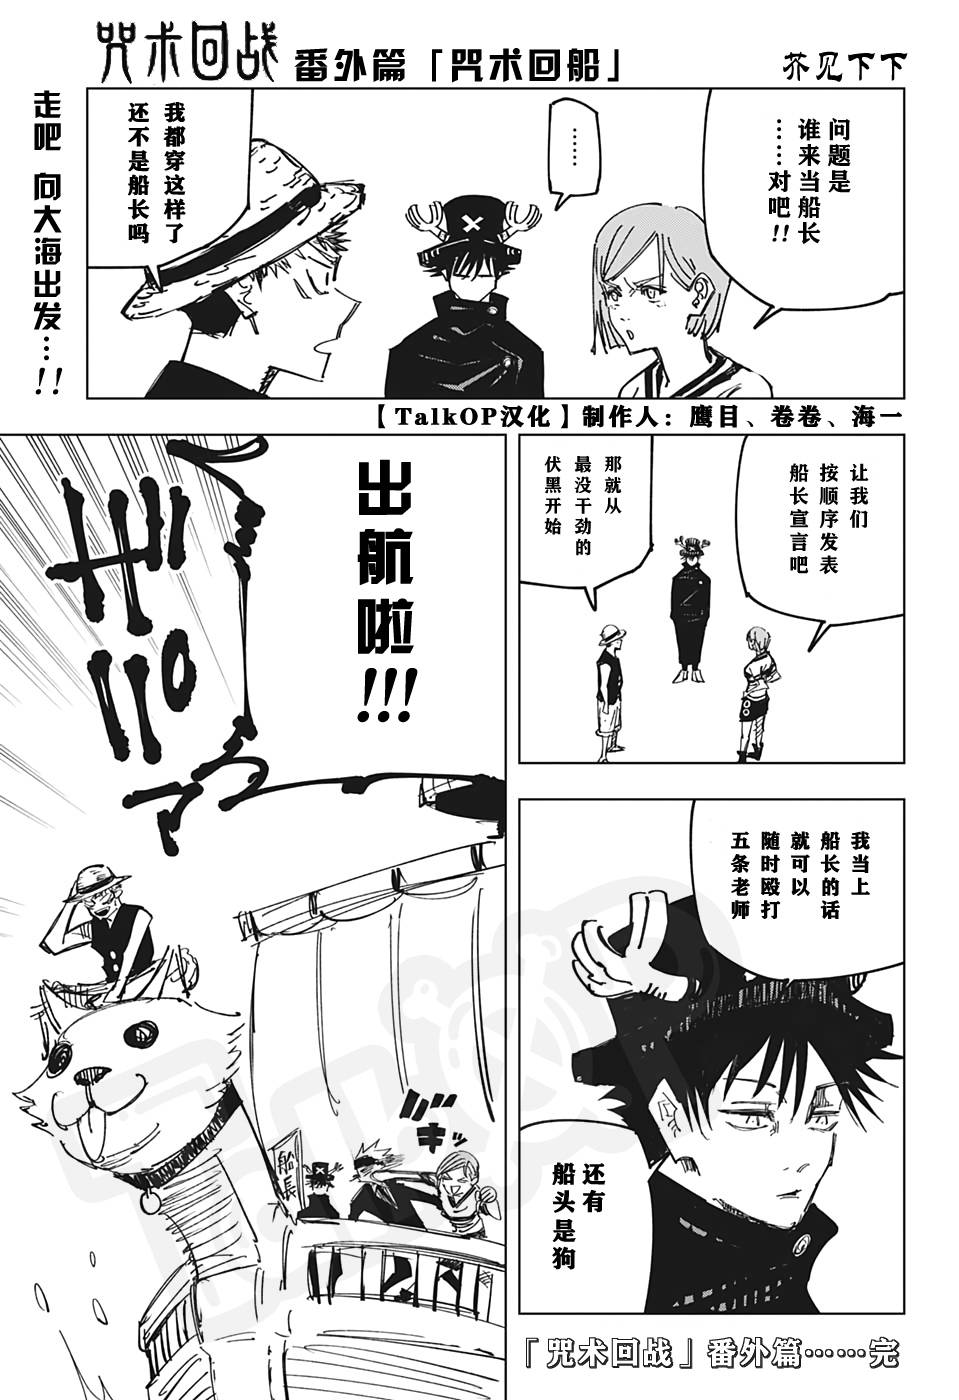 【漫画】海贼王1000话纪念番外篇:连载漫画家齐画假如xx是船长系列